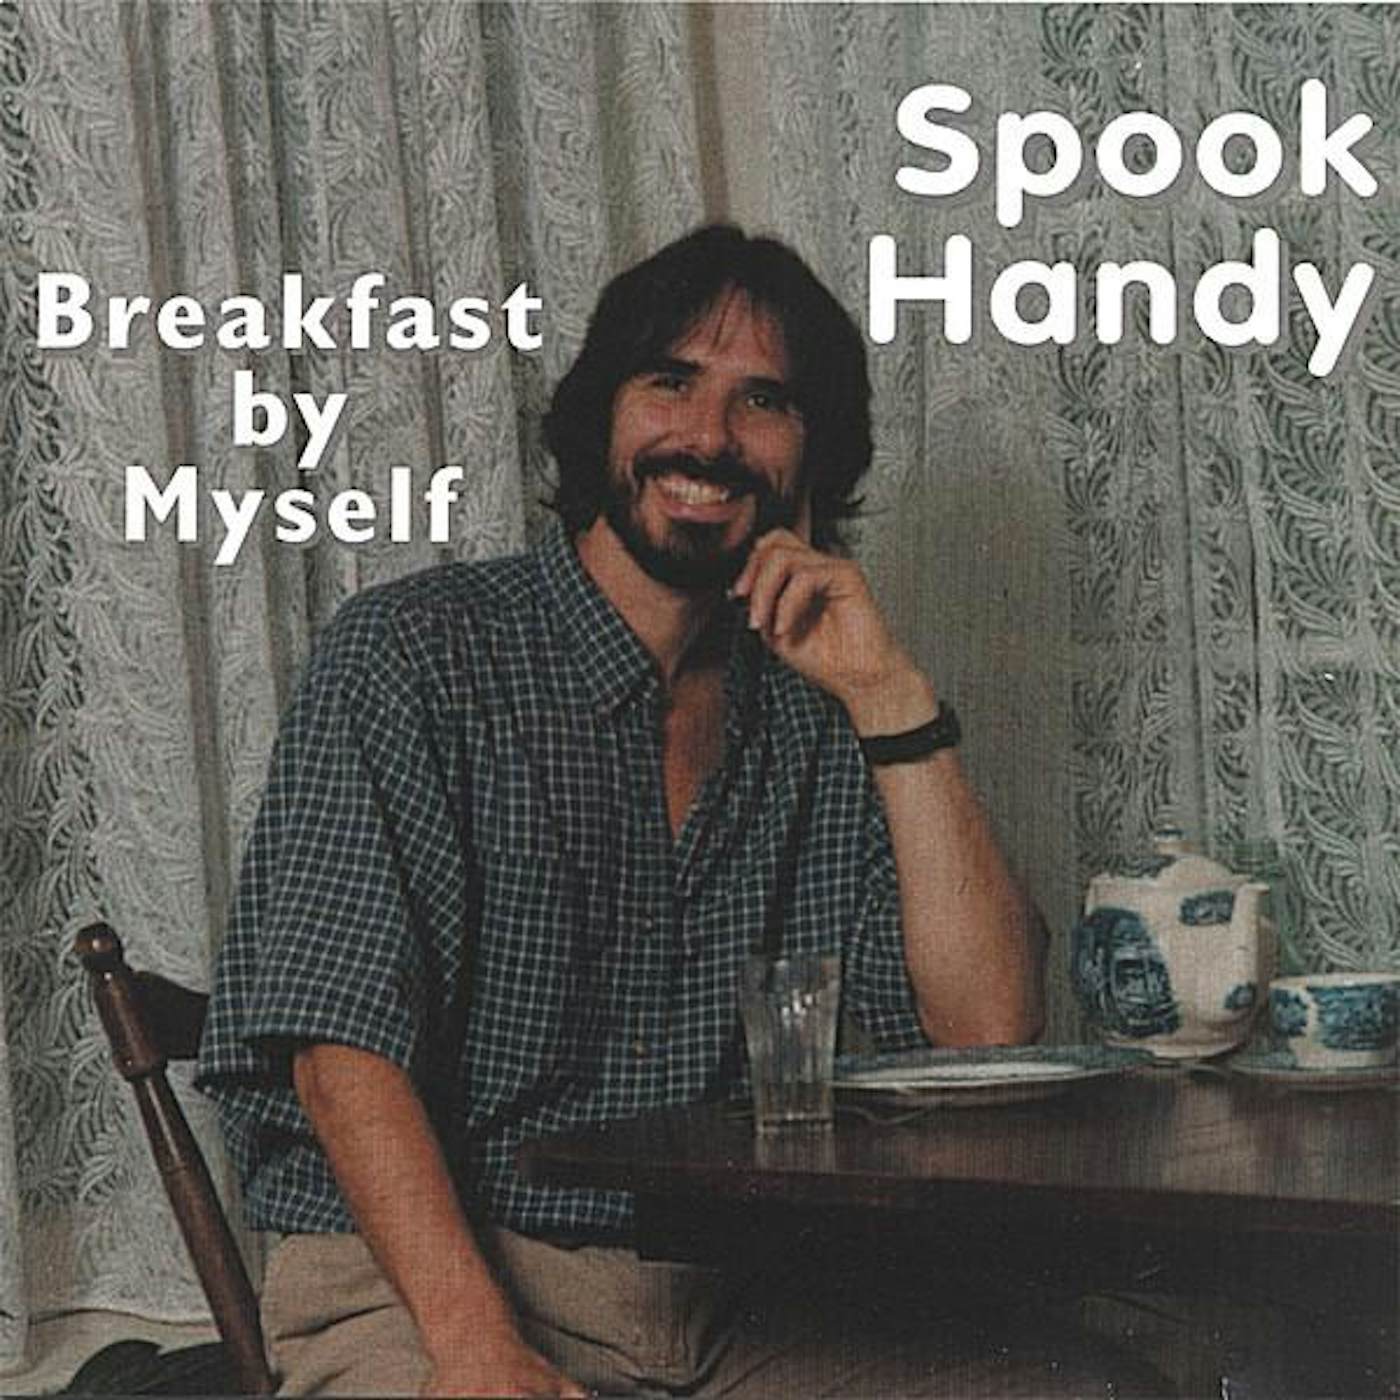 Spook Handy BREAKFAST BY MYSELF CD